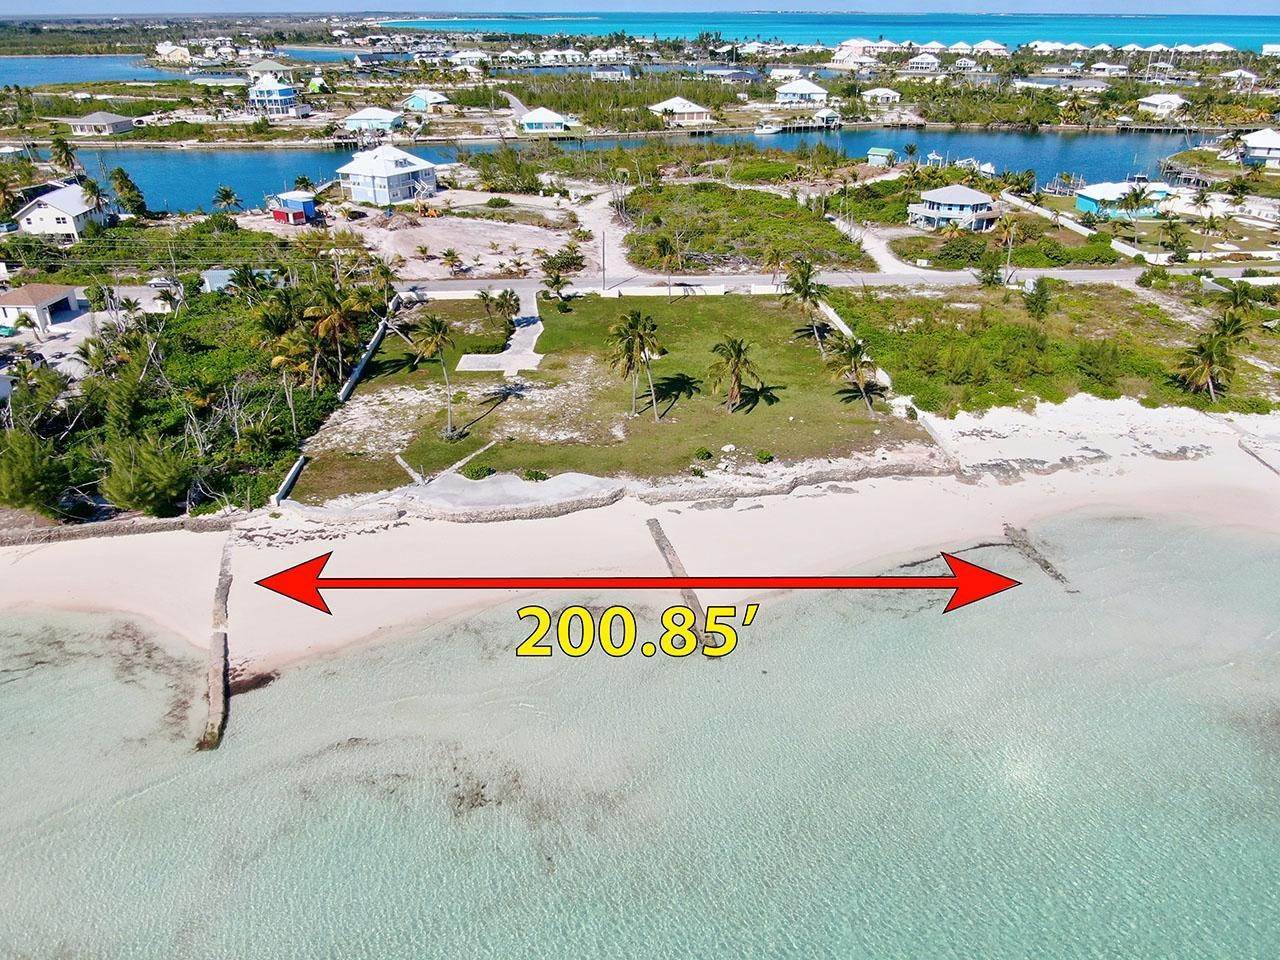 4. Lots / Acreage for Sale at Windward Beach, Treasure Cay, Abaco, Bahamas